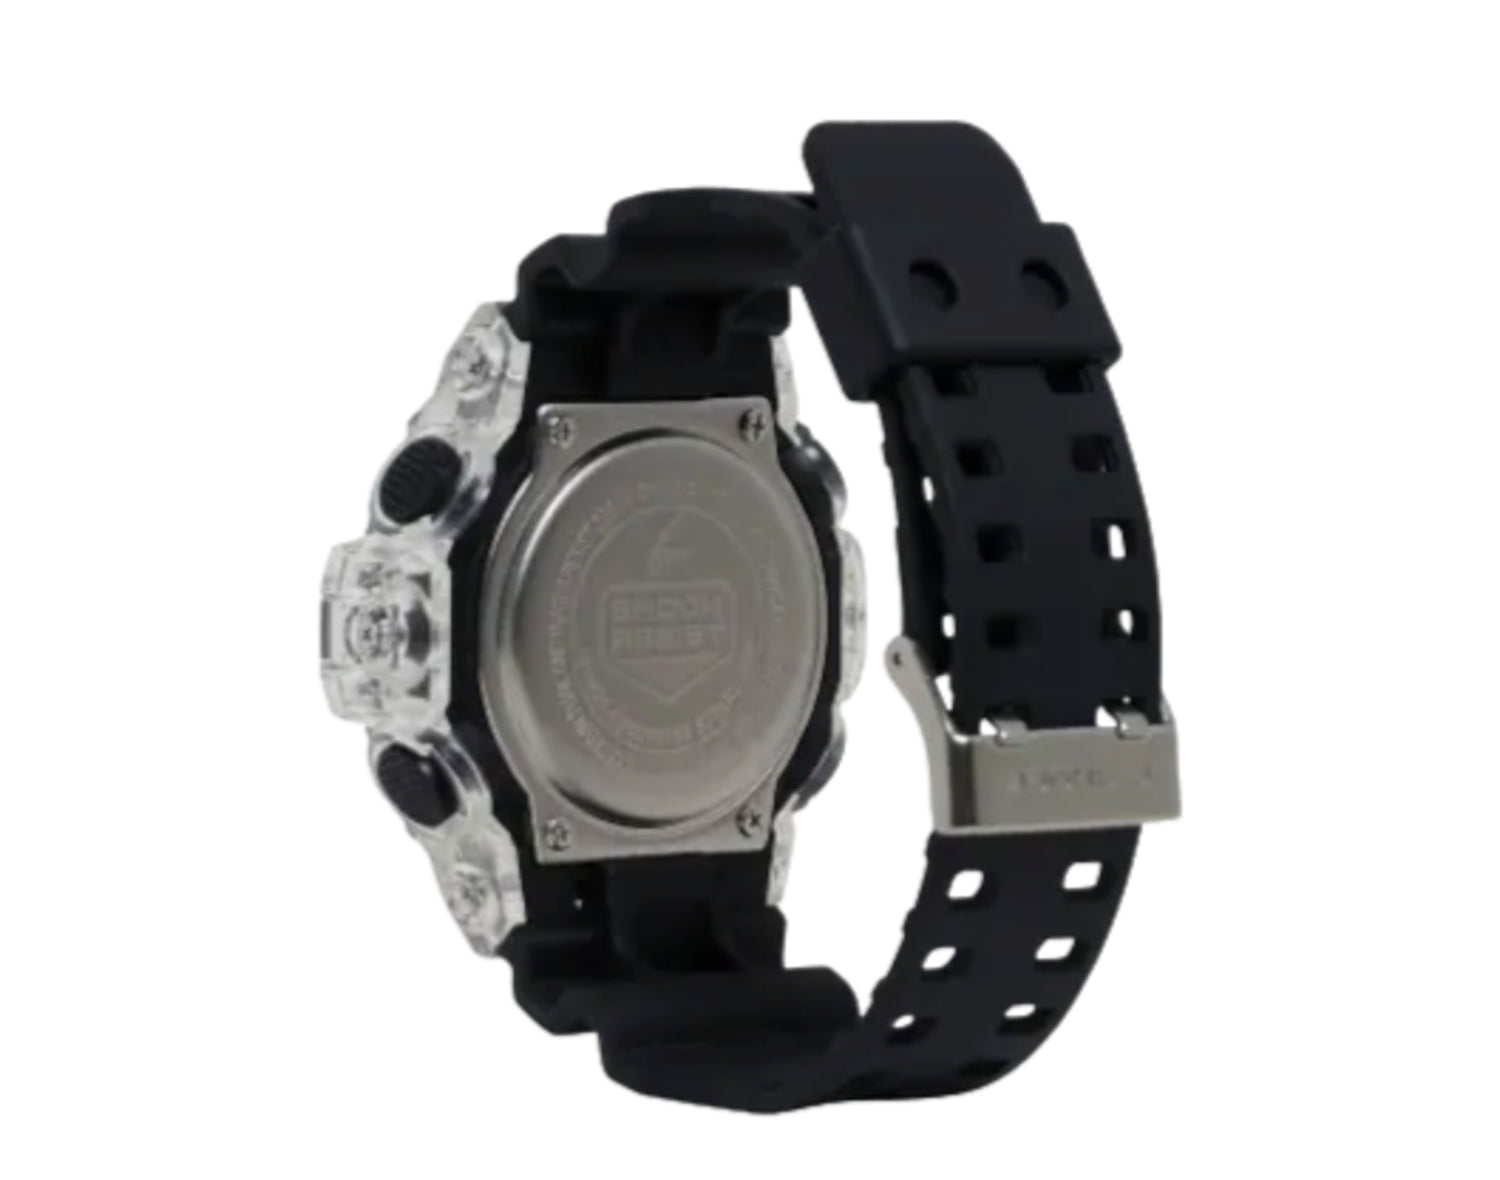 Casio G-Shock GA700SKC Analog Digital Resin Watch